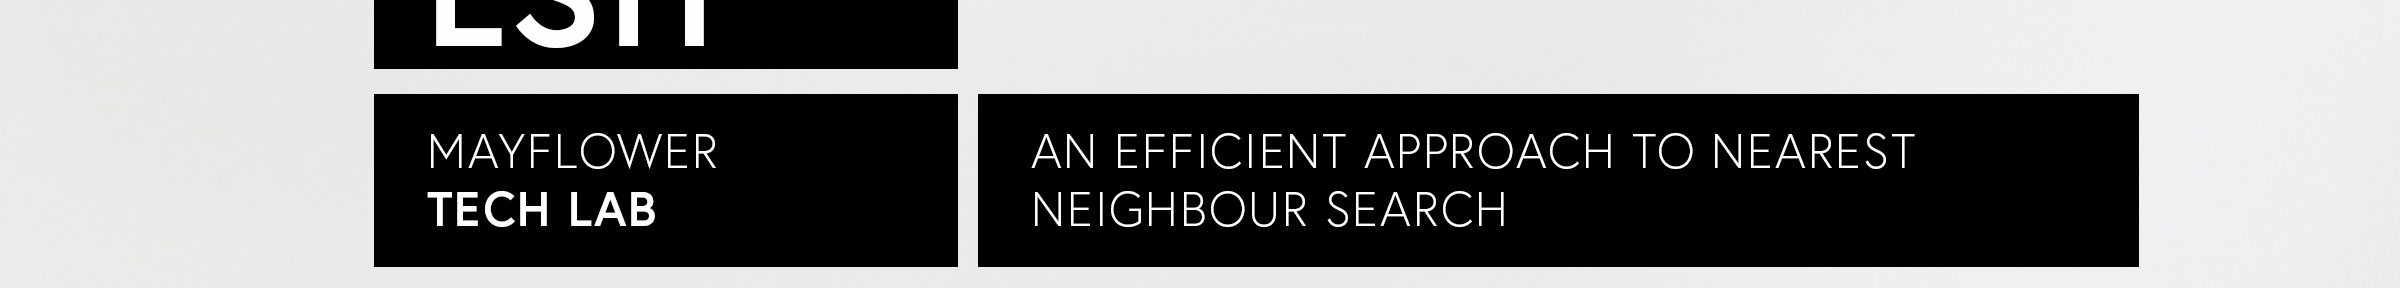 LSH – an efficient approach to nearest neighbour search